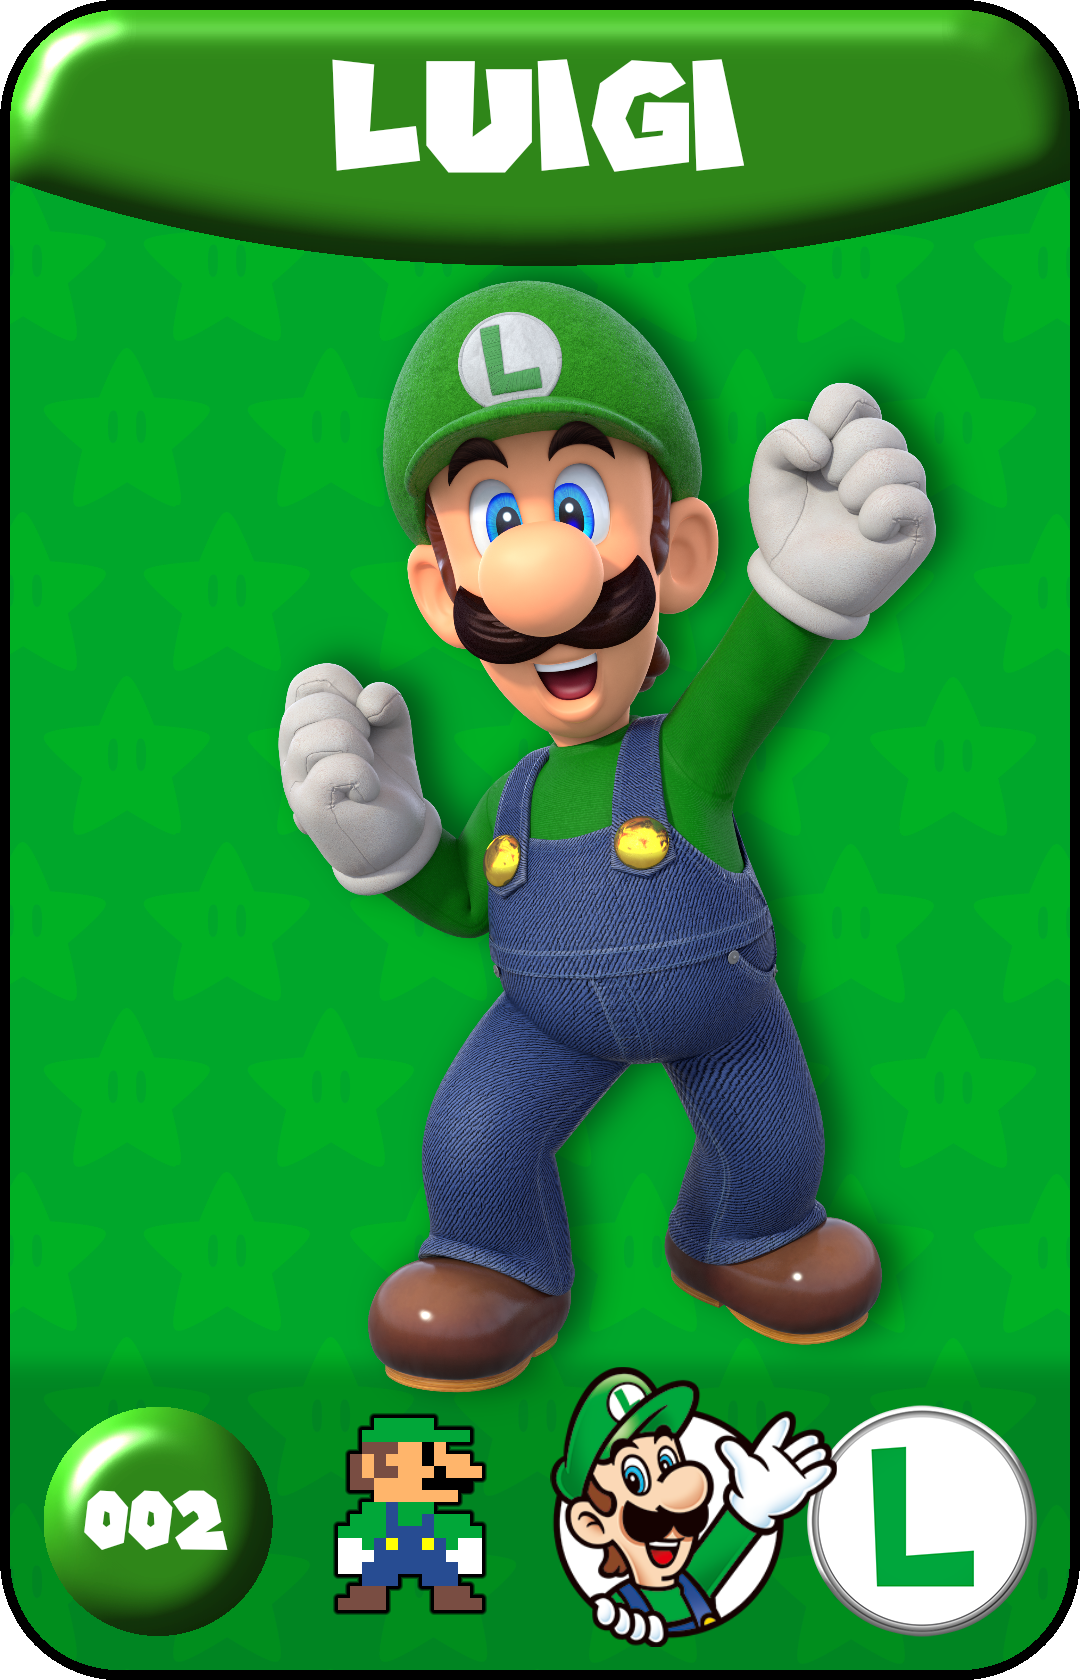 002 - Luigi (1).png